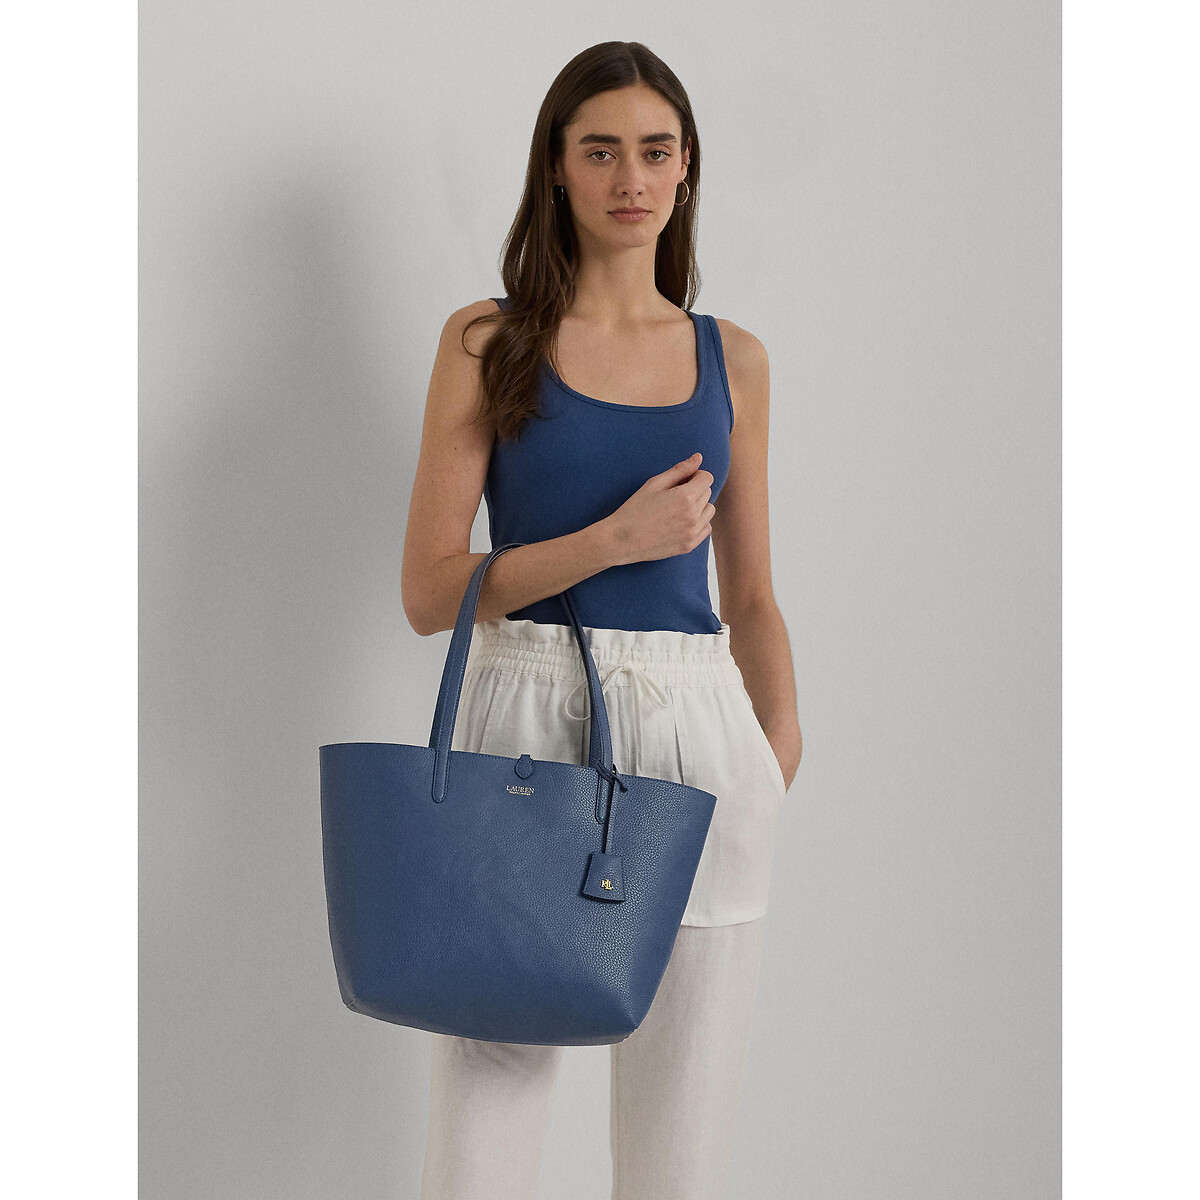 Сумка-шоппер двухсторонняя единый размер синий сумка шоппер bs синий единый размер